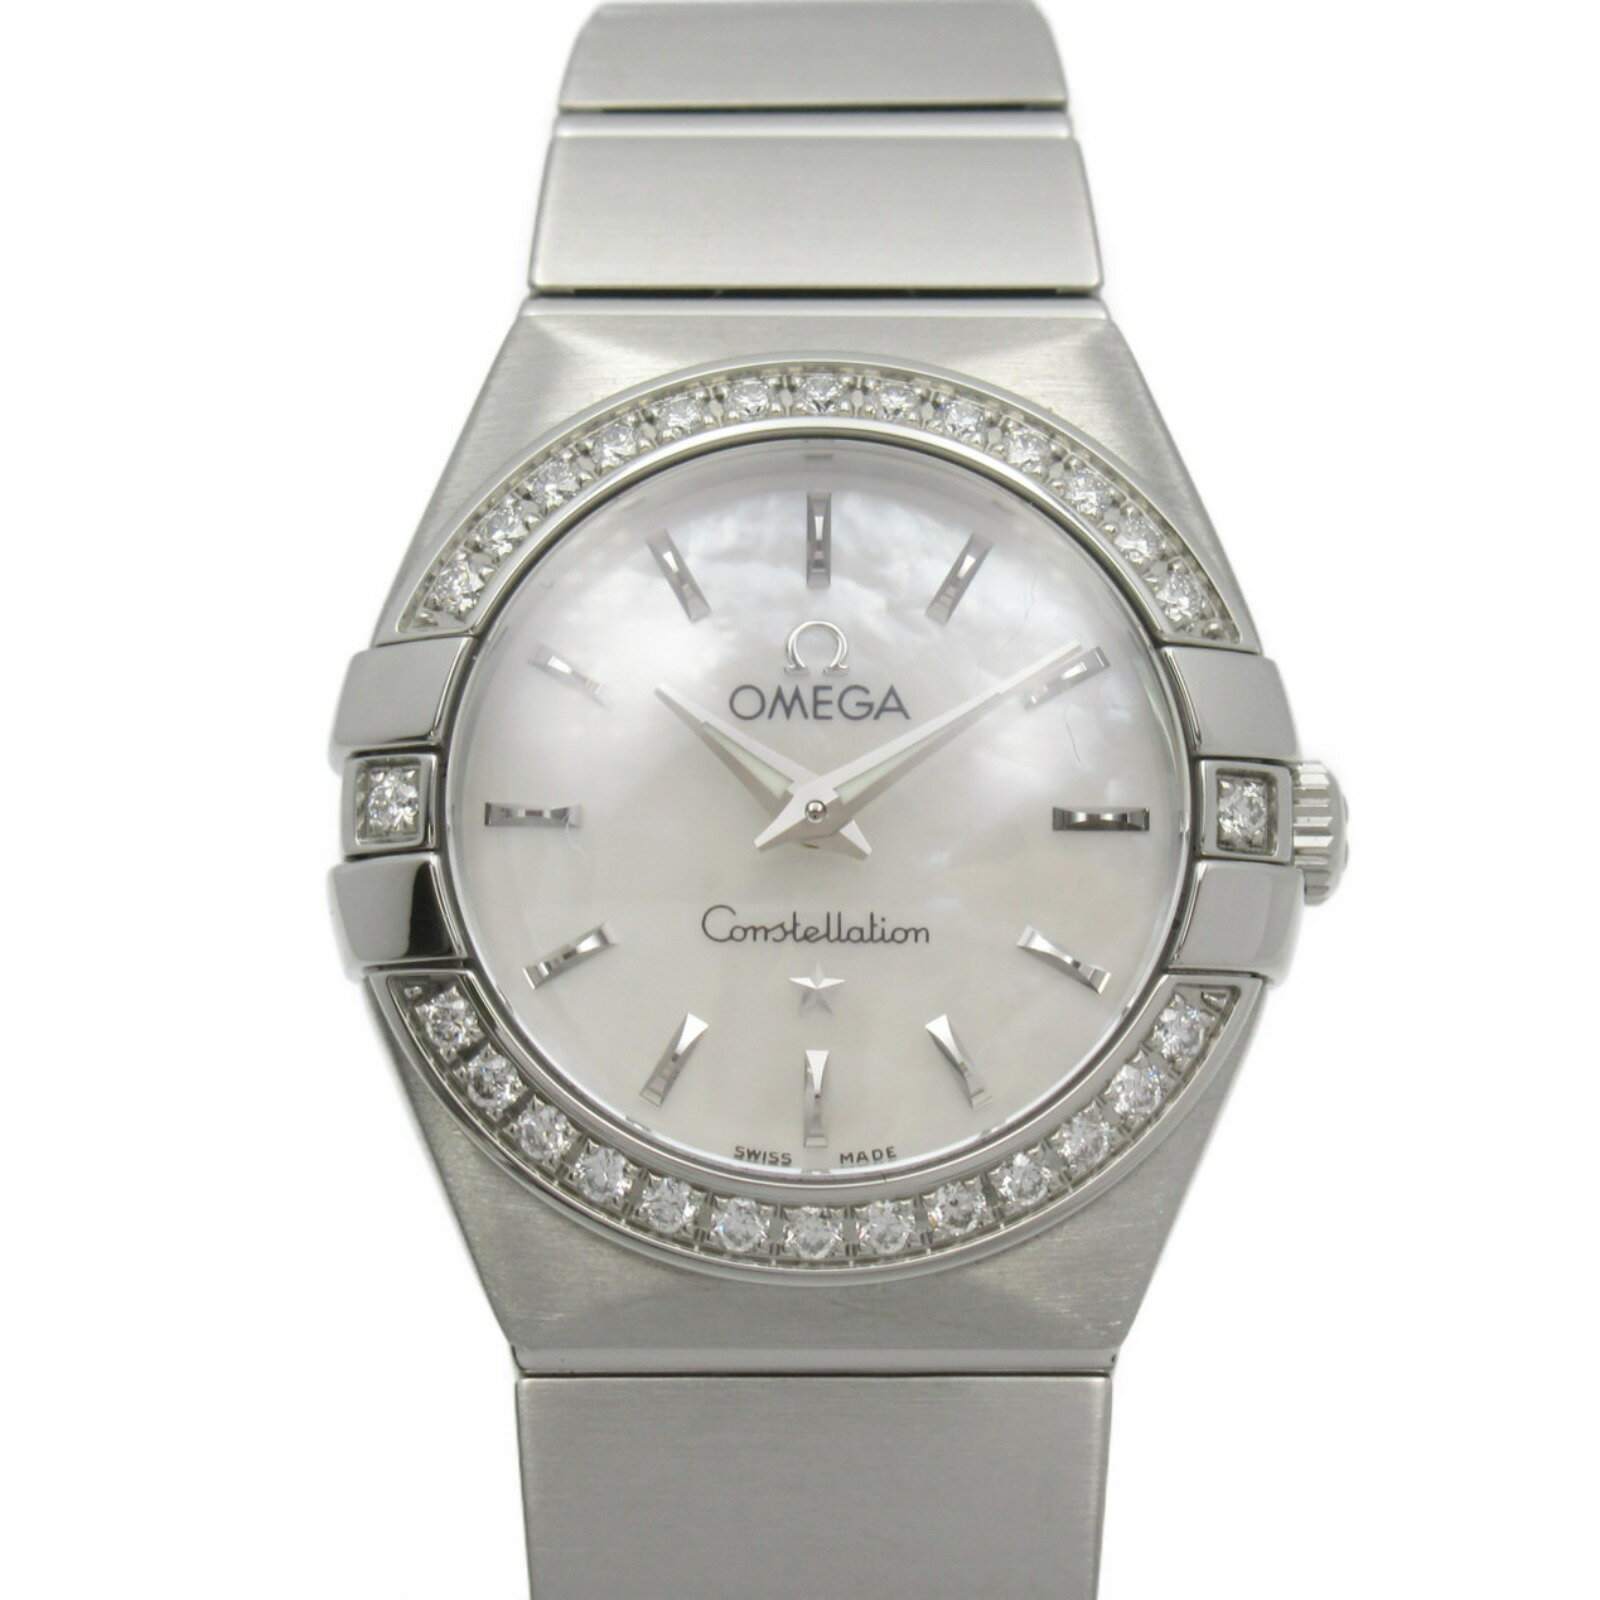 オメガ OMEGA コンステレーション 腕時計 時計 ステンレススチール ダイヤモンド レディース ホワイト系 シェル 123.15.24.60.05.001 【中古】 | ブランド ブランド時計 ブランド腕時計 ウォッチ